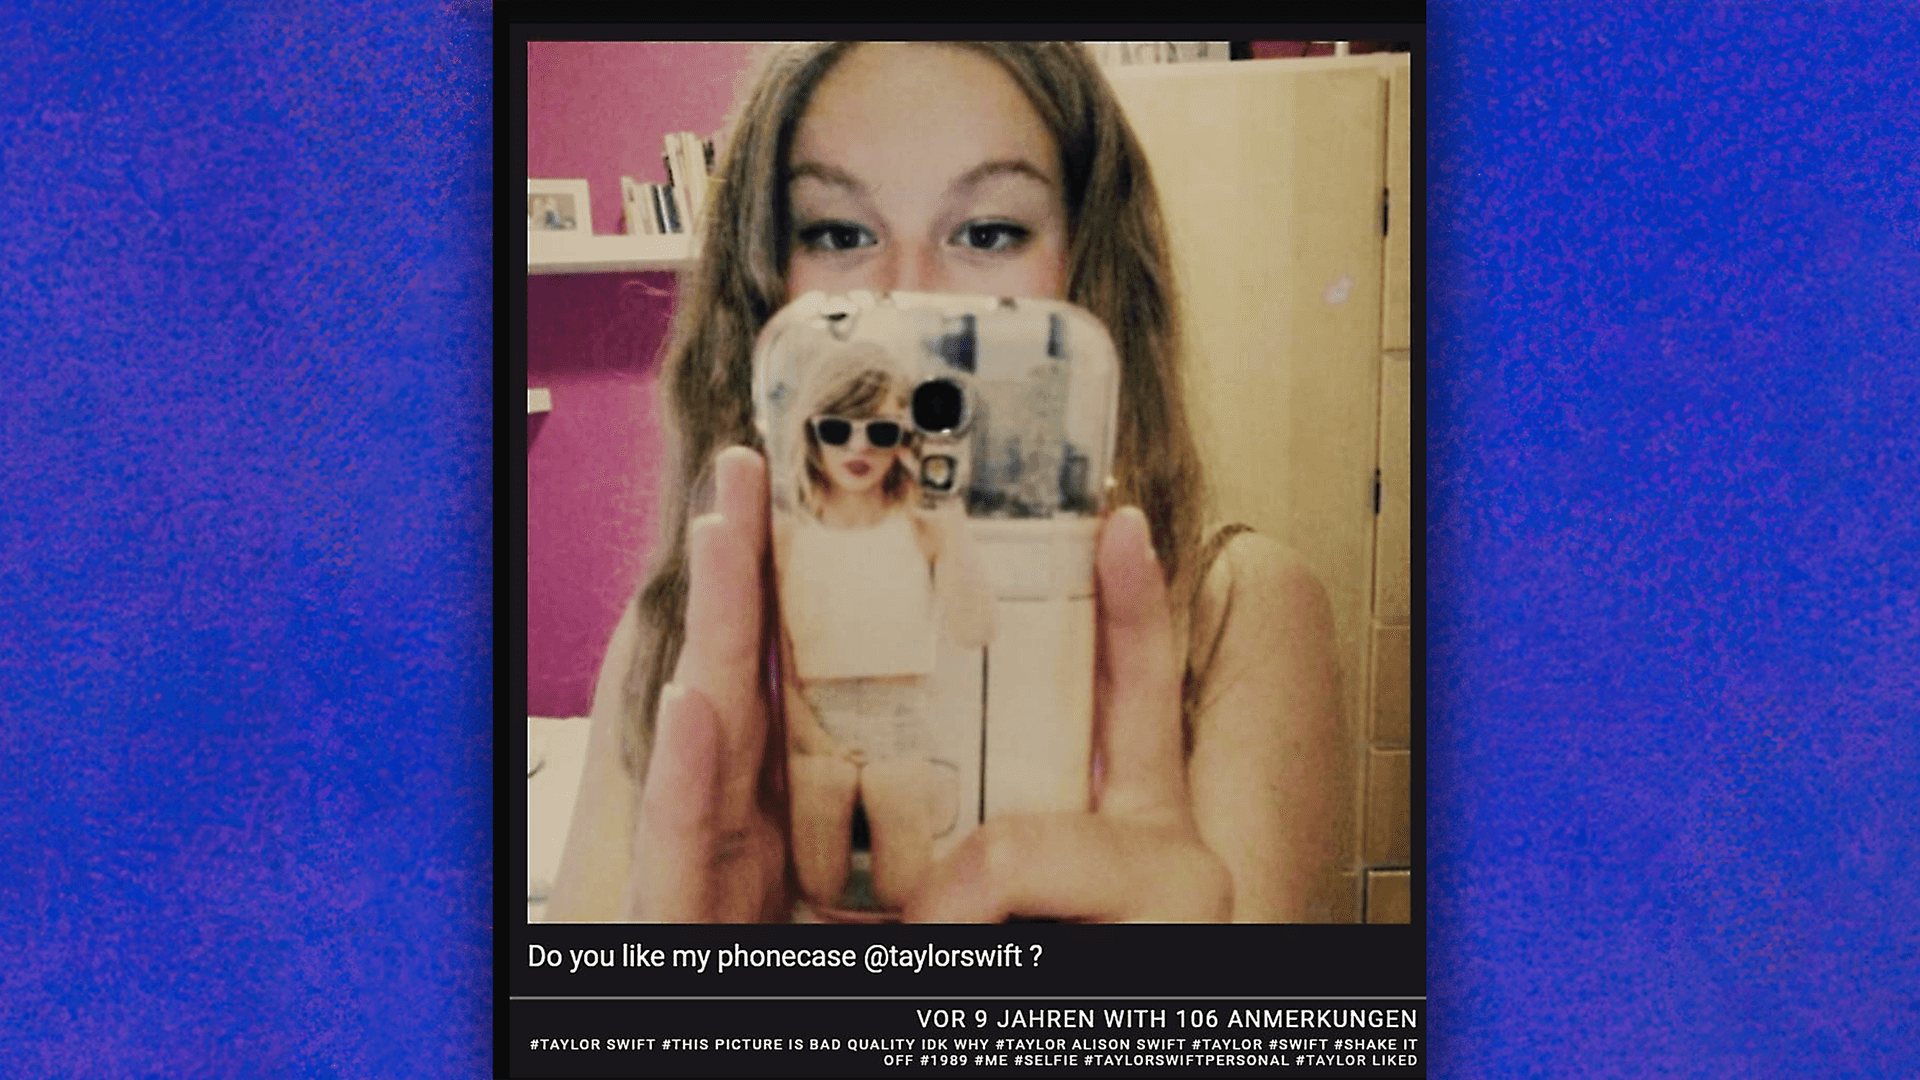 Ein etwas verwaschenes Tumblr-Bild von einer jungen Frau mit einem Smartphone in der Hand.